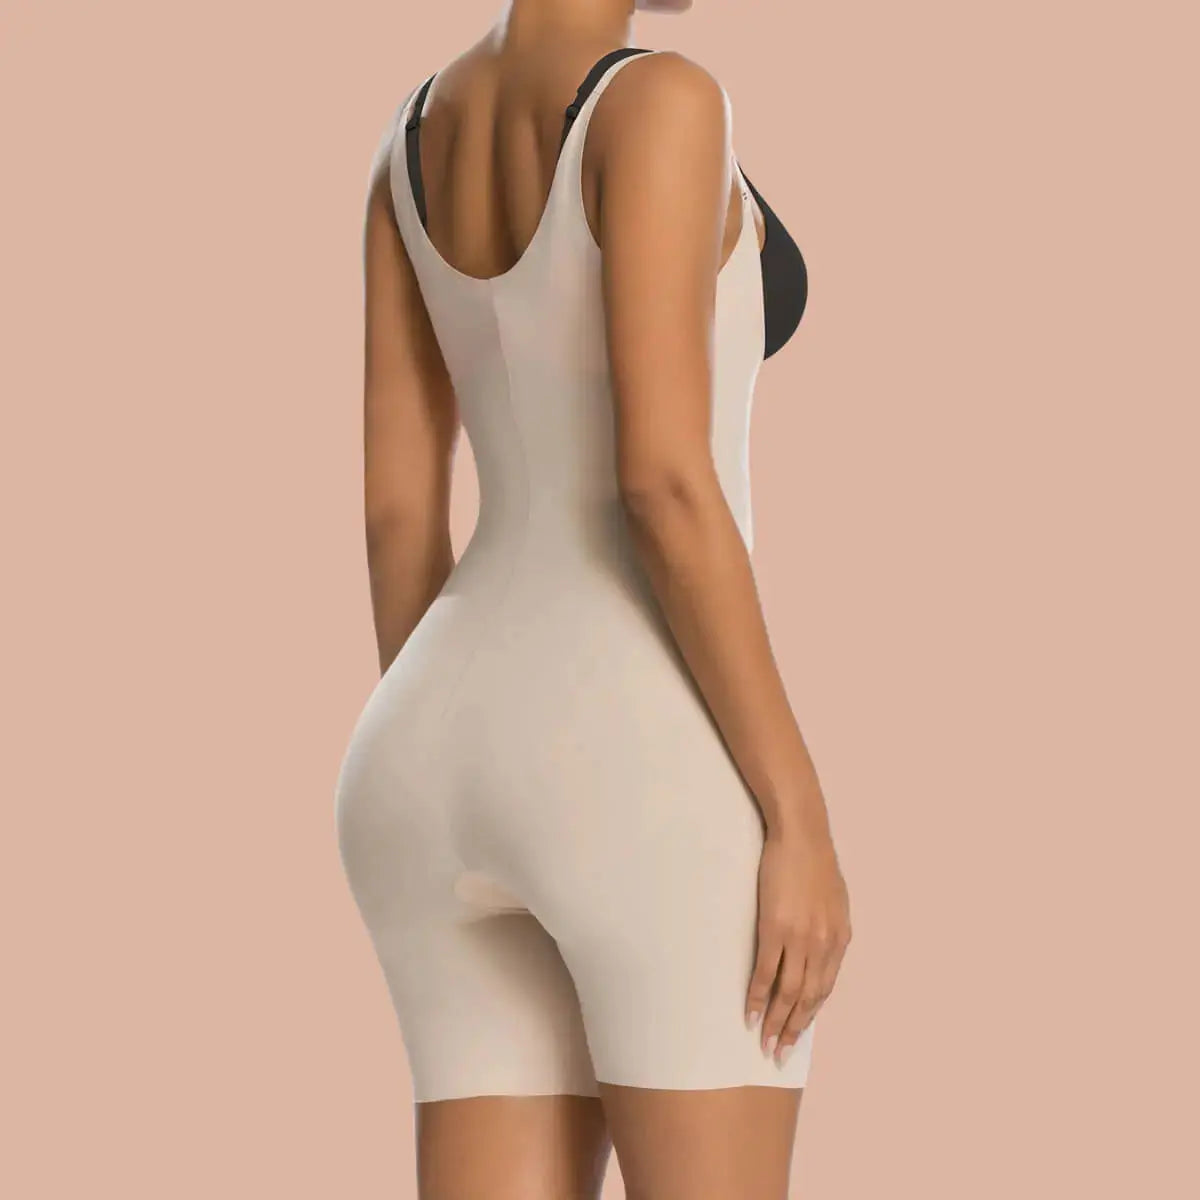 Shaperx Women's XL Beige NWT Tummy Control Shapewear